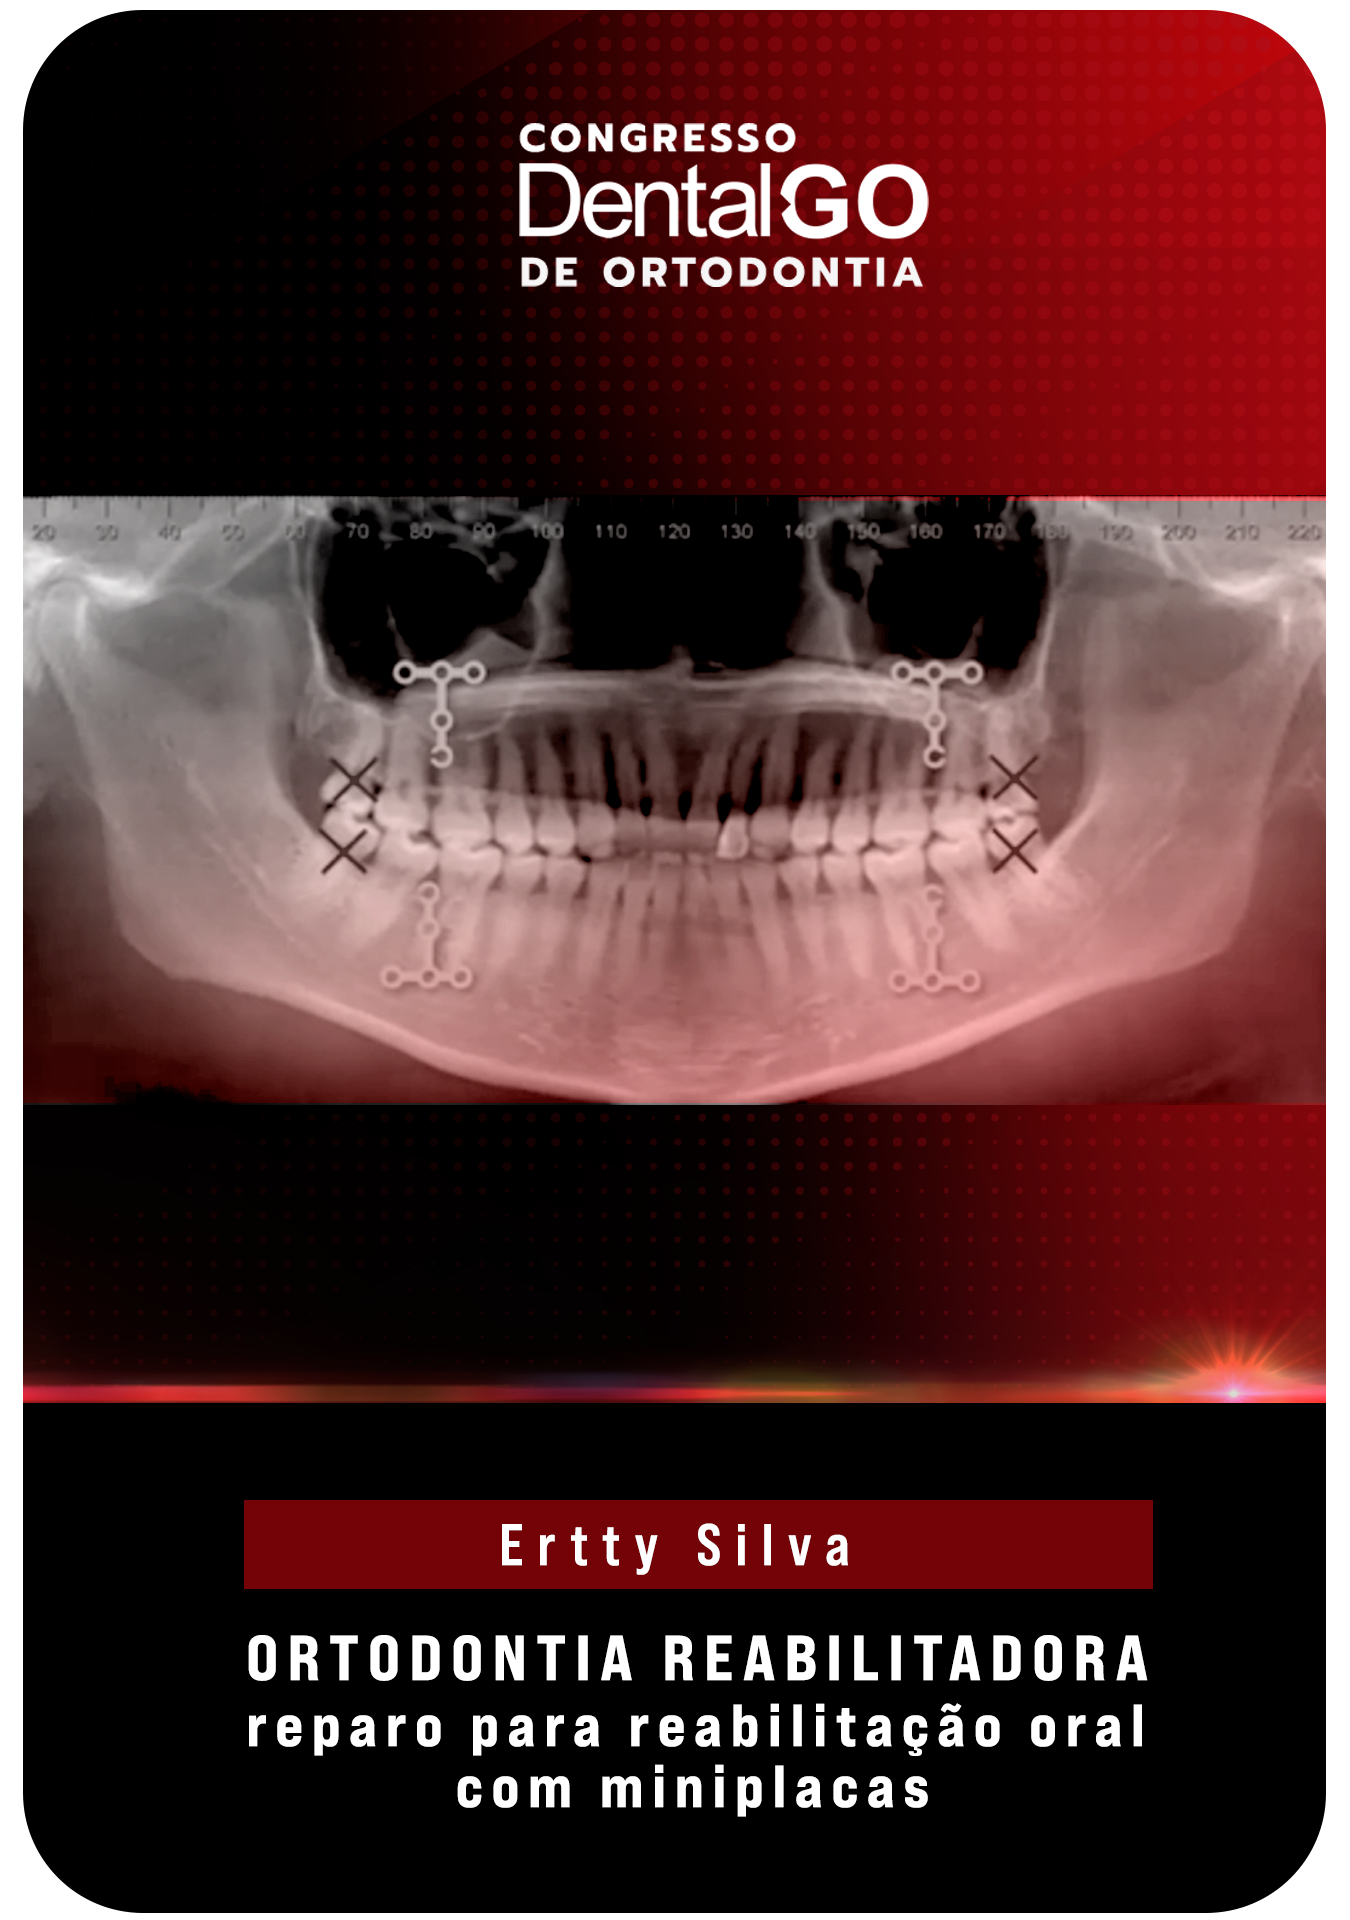 Ertty Silva - Ortodontia reabilitadora, reparo para reabilitação oral com miniplacas